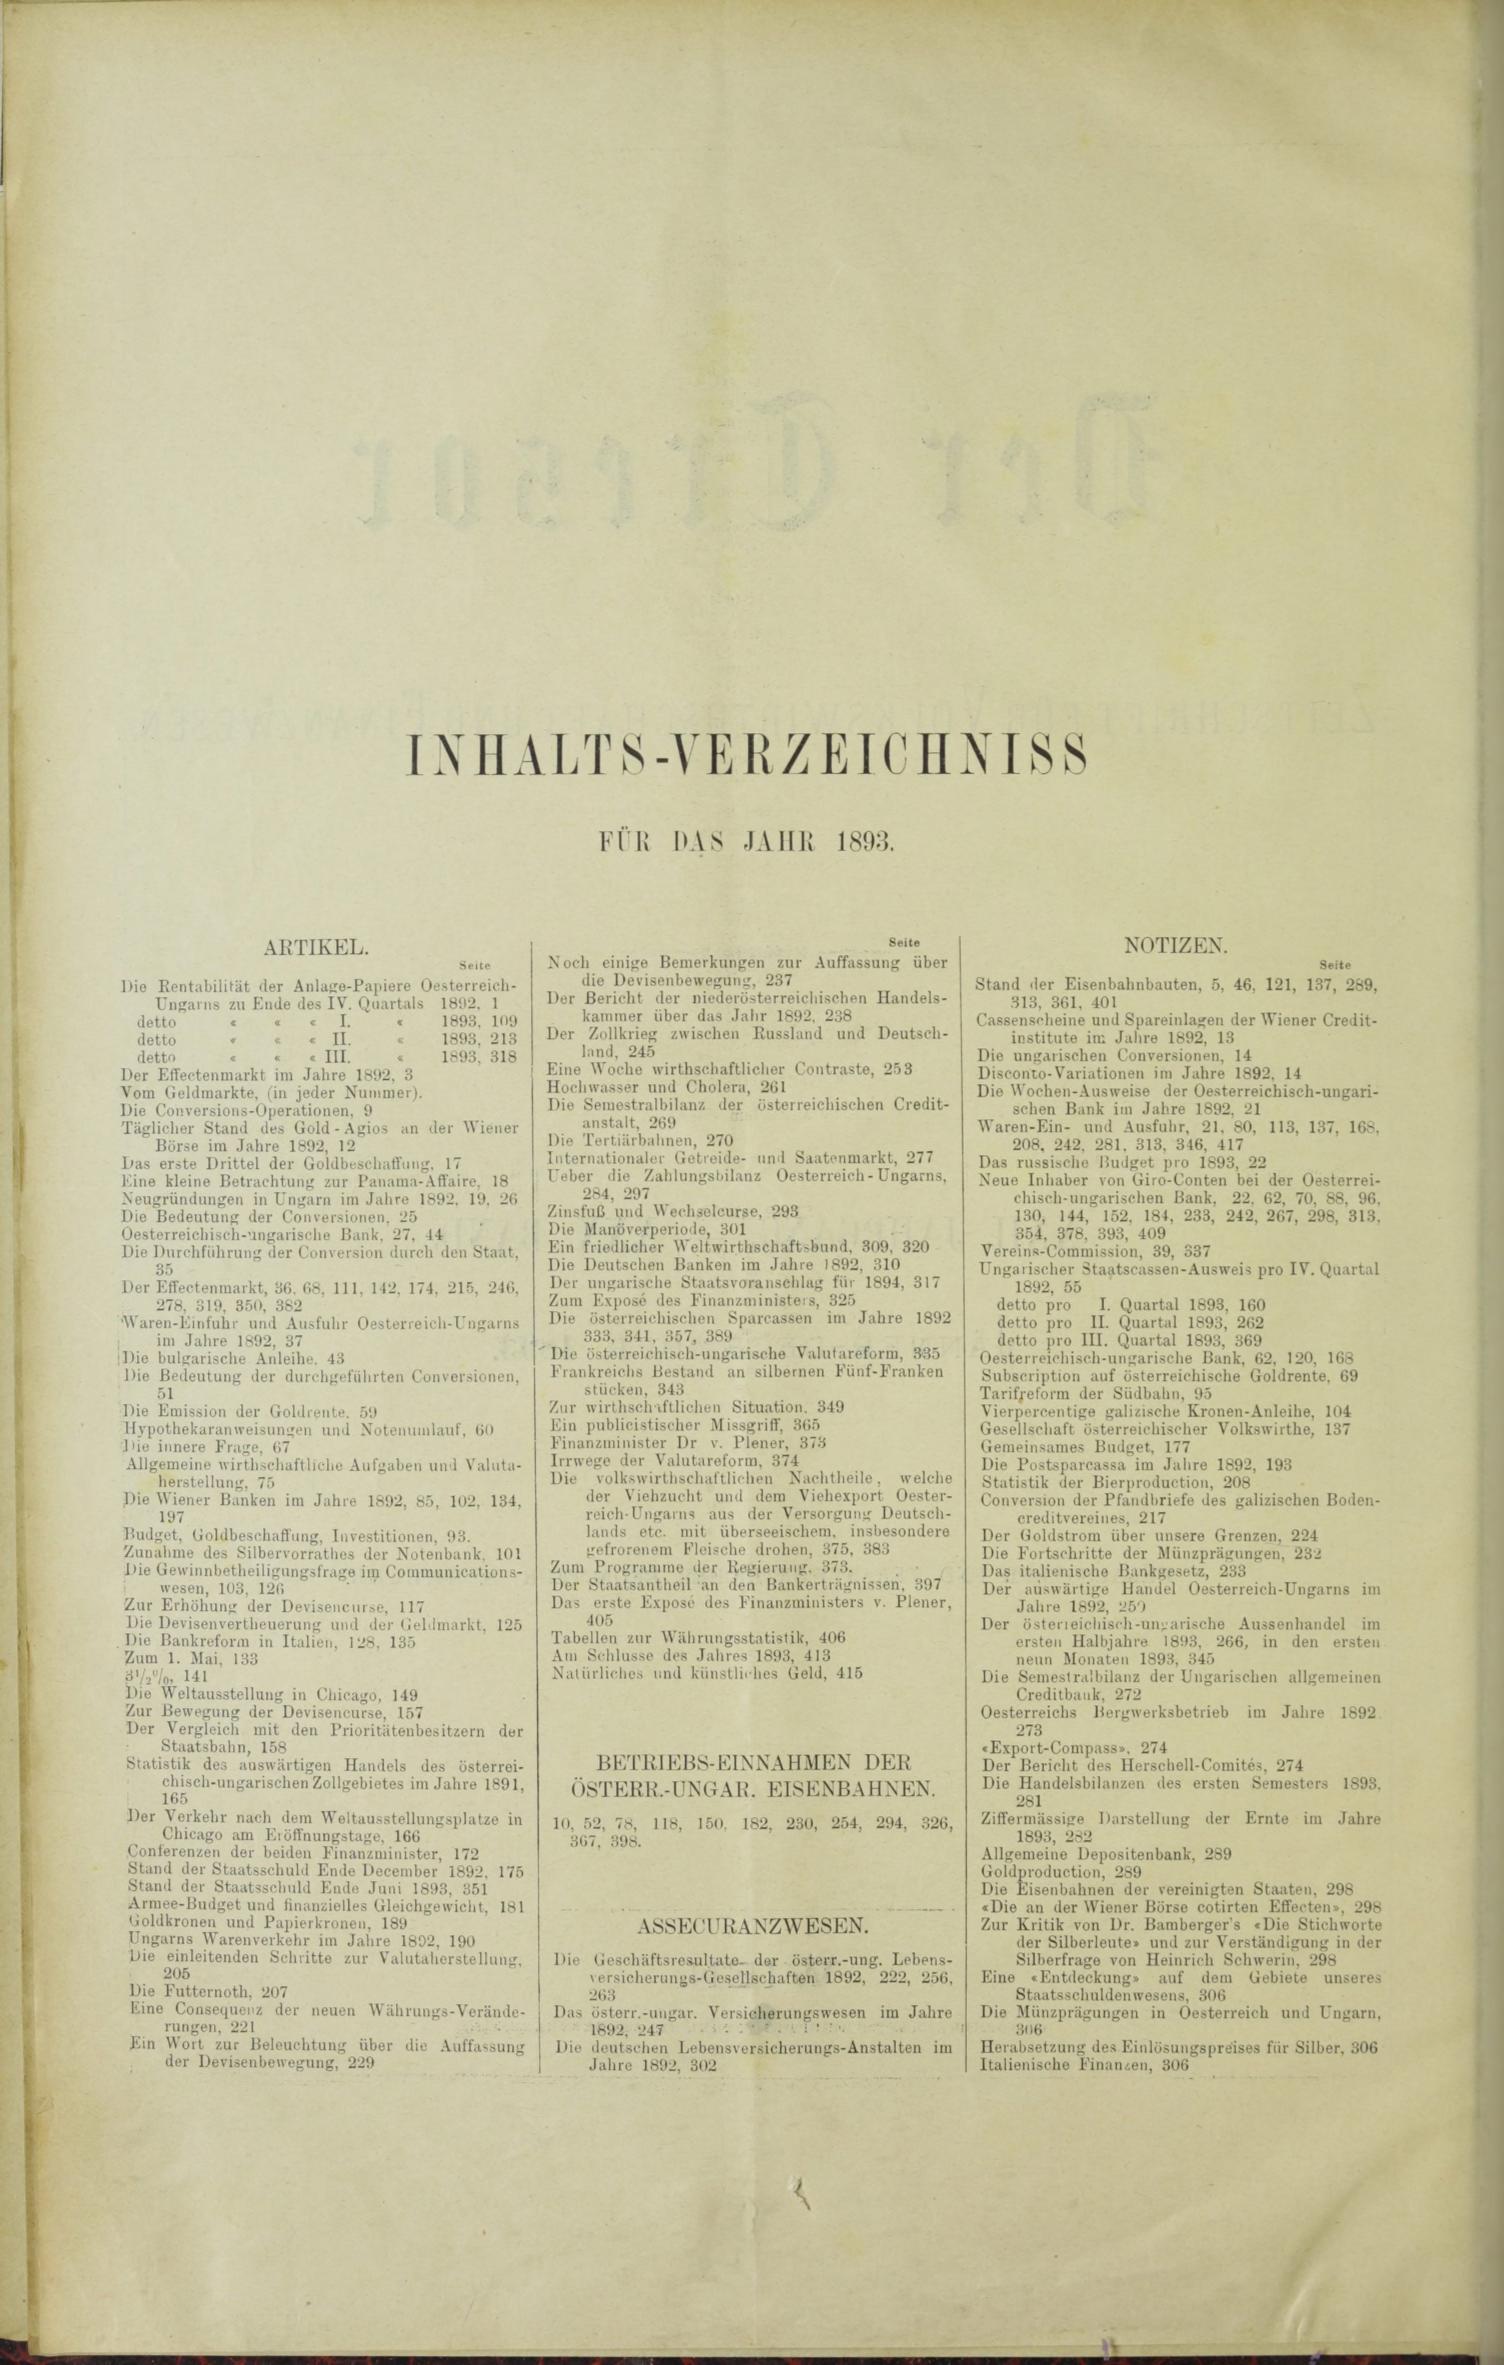 Der Tresor 11.05.1893 - Seite 10